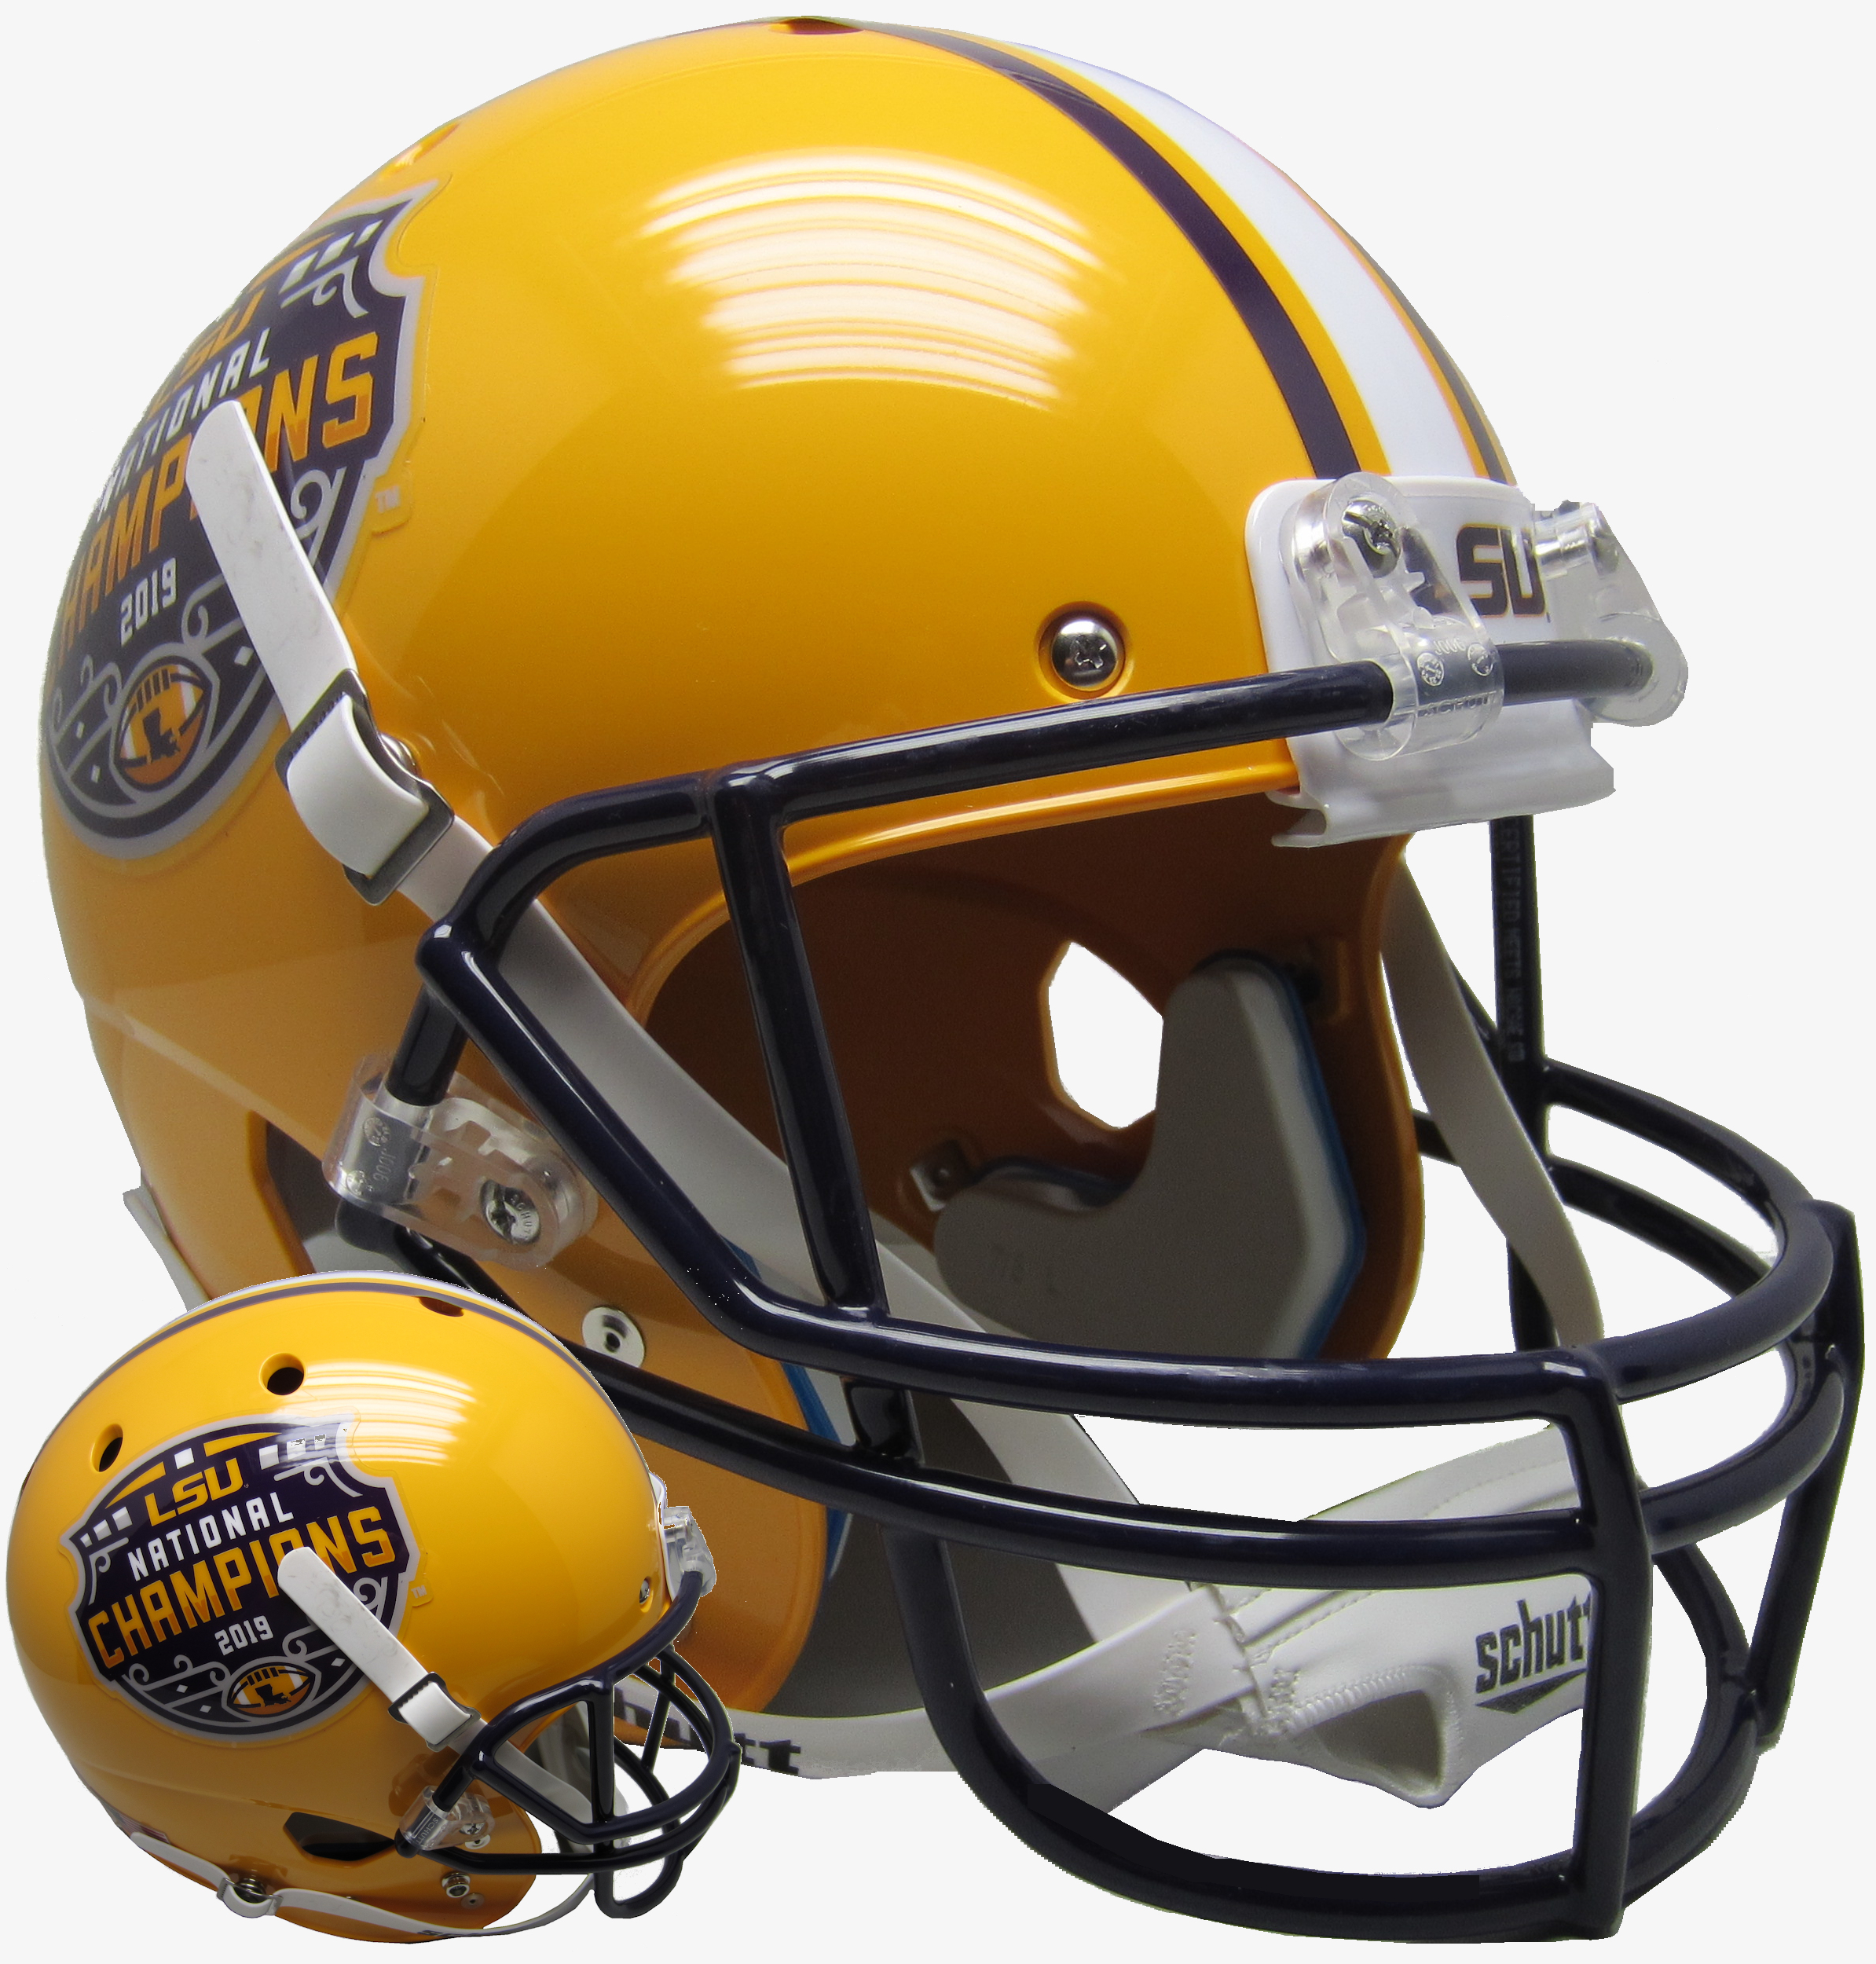 LSU Tigers Full XP Replica Football Helmet Schutt <B>2019 National Champs</B>